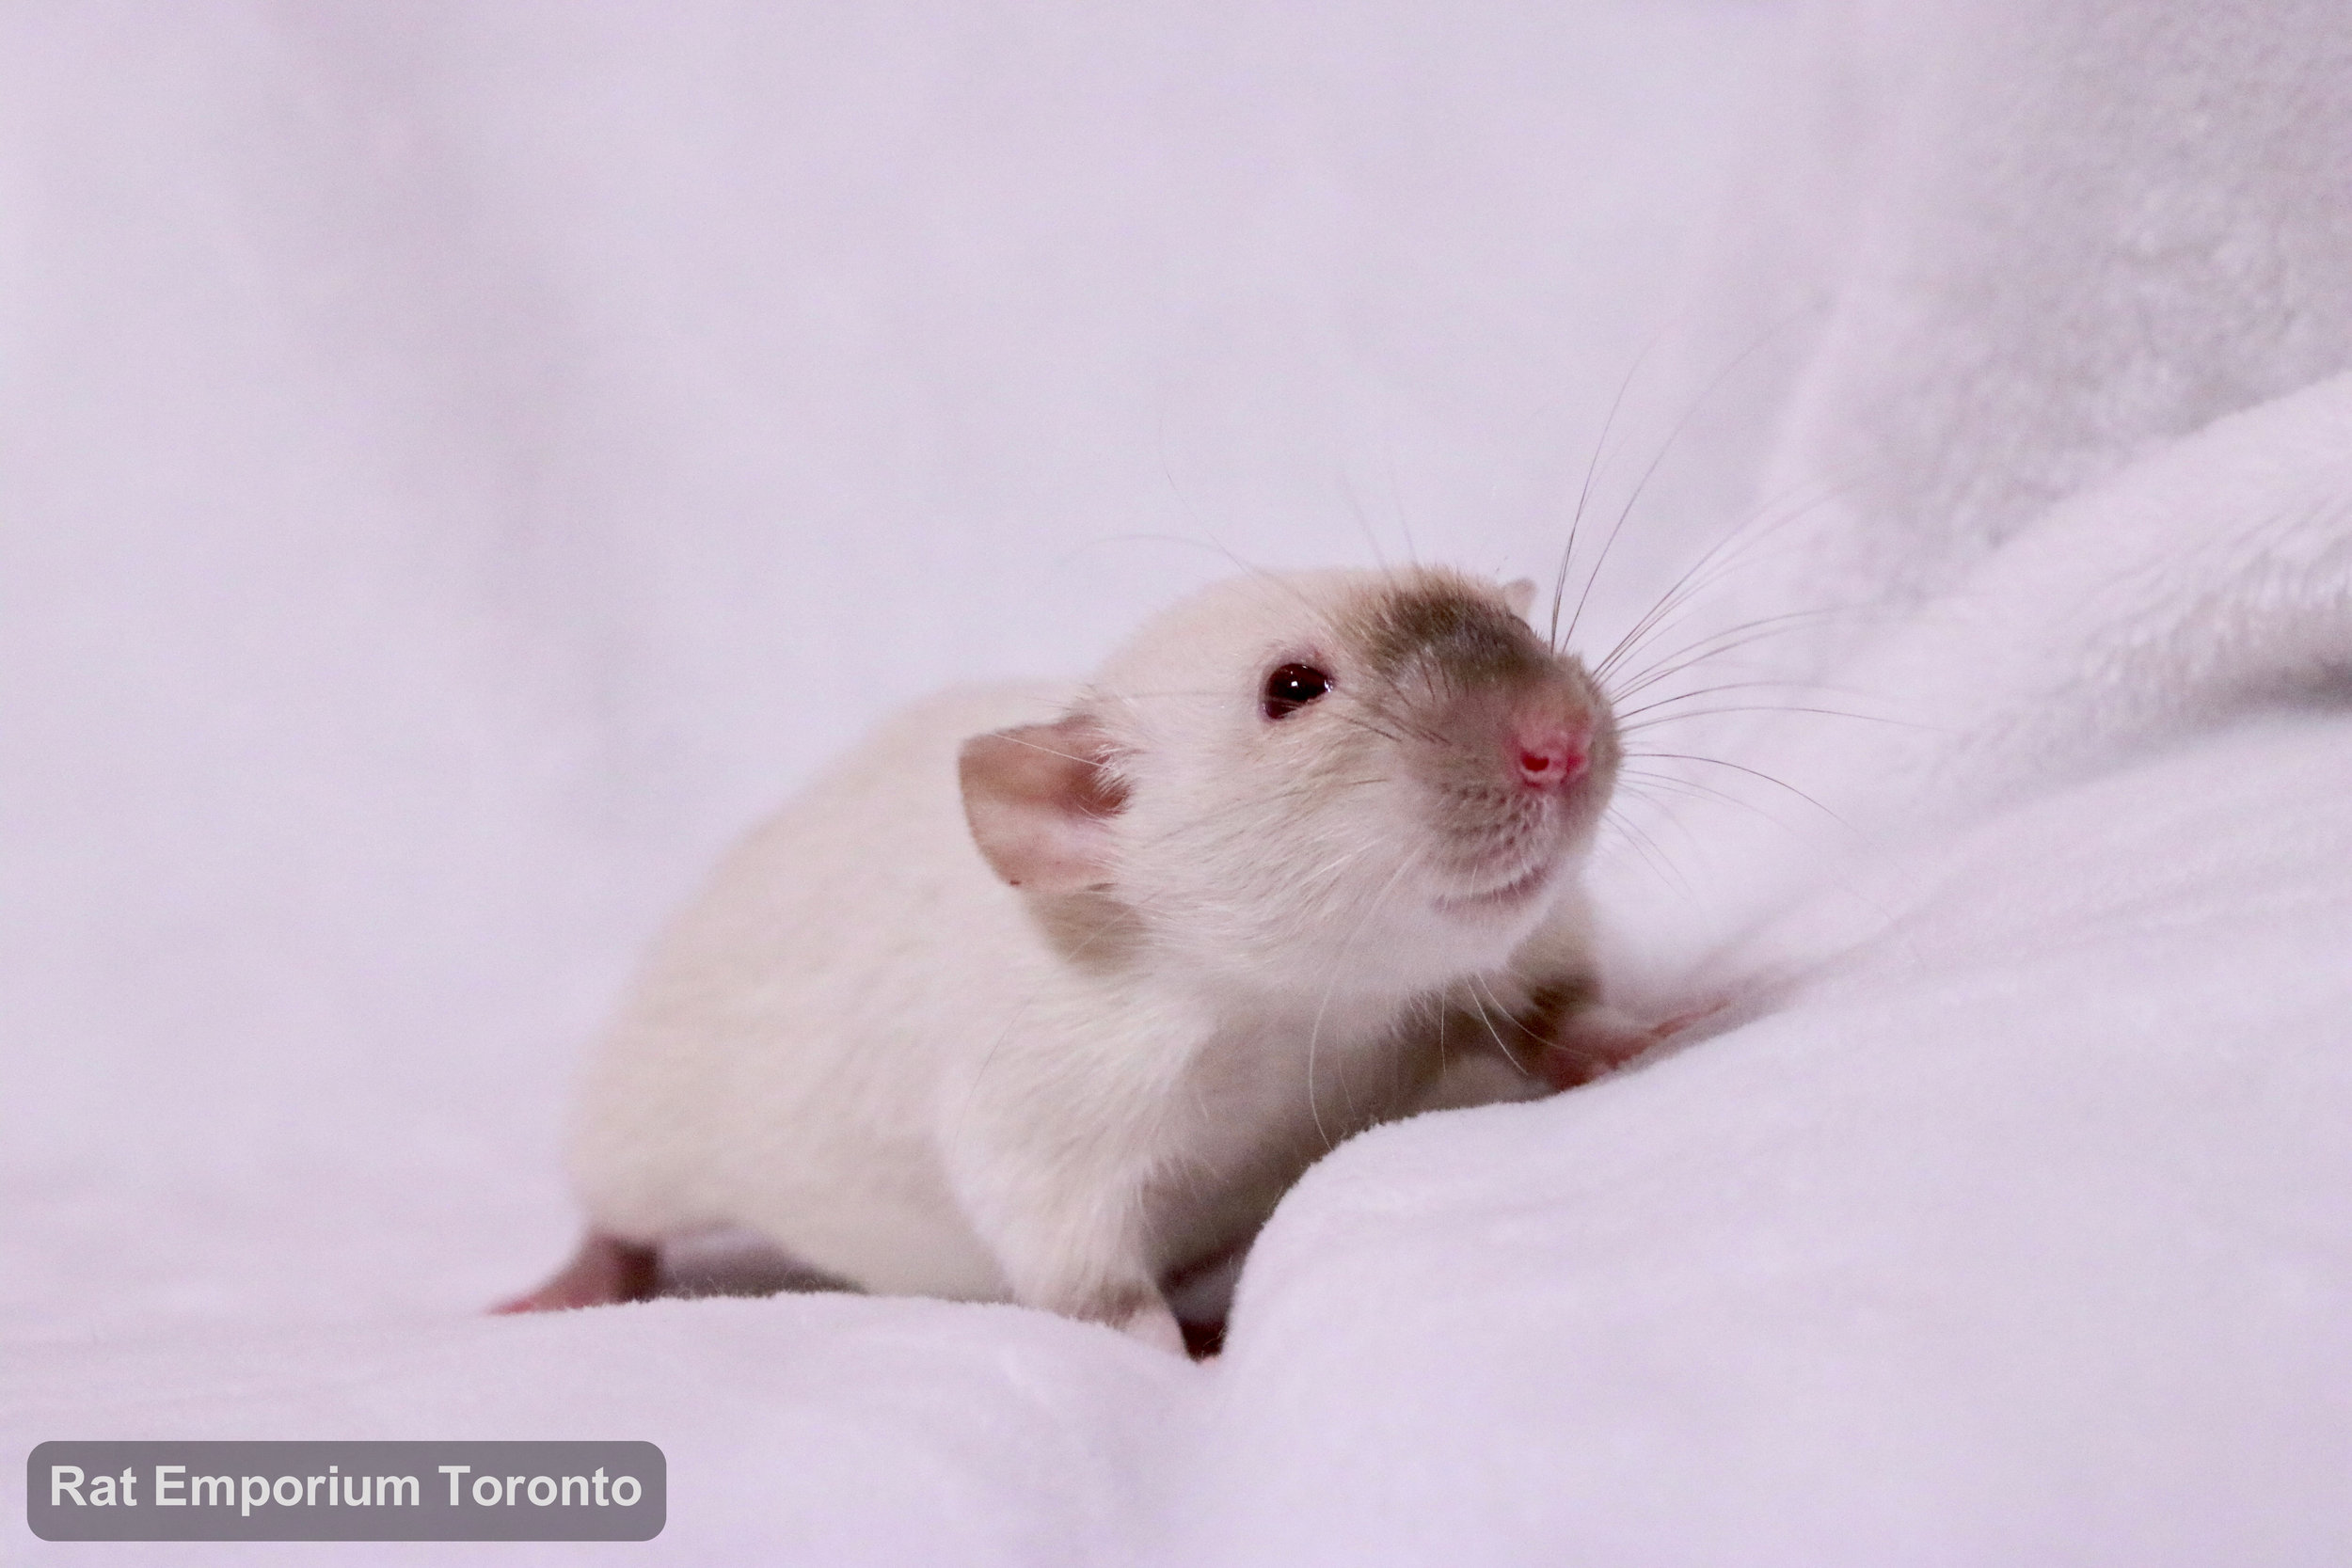 female siamese dumbo rat - born and raised at the Rat Emporium Toronto - rat breeder - adopt pet rats Toronto